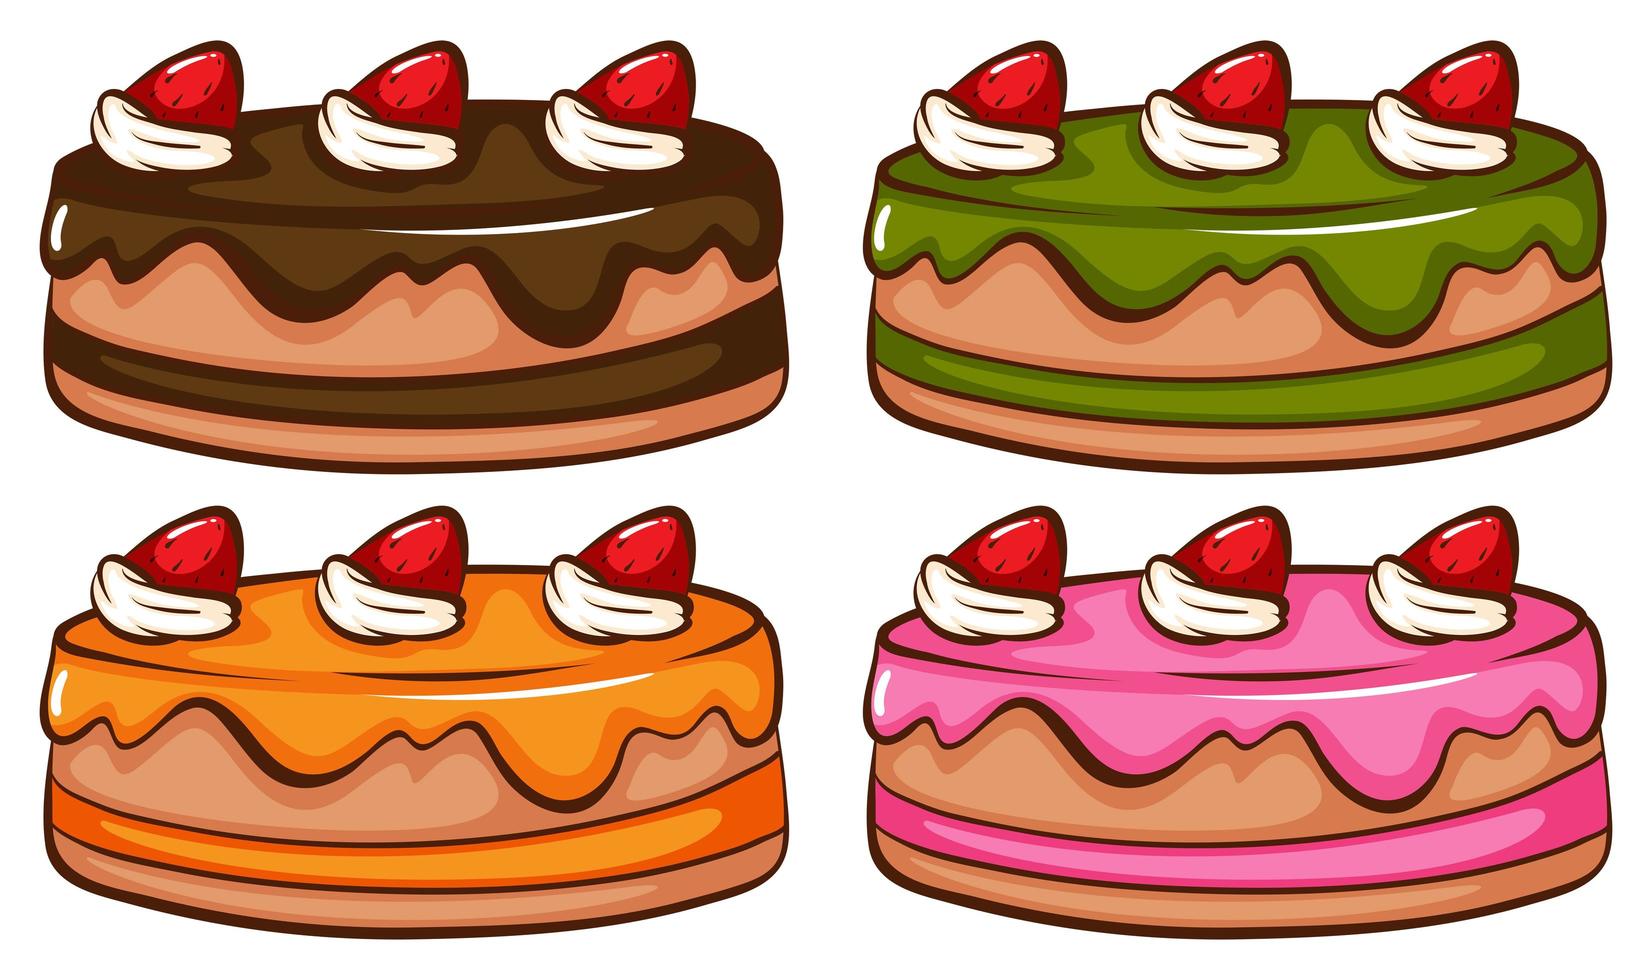 un simple boceto coloreado de los pasteles vector